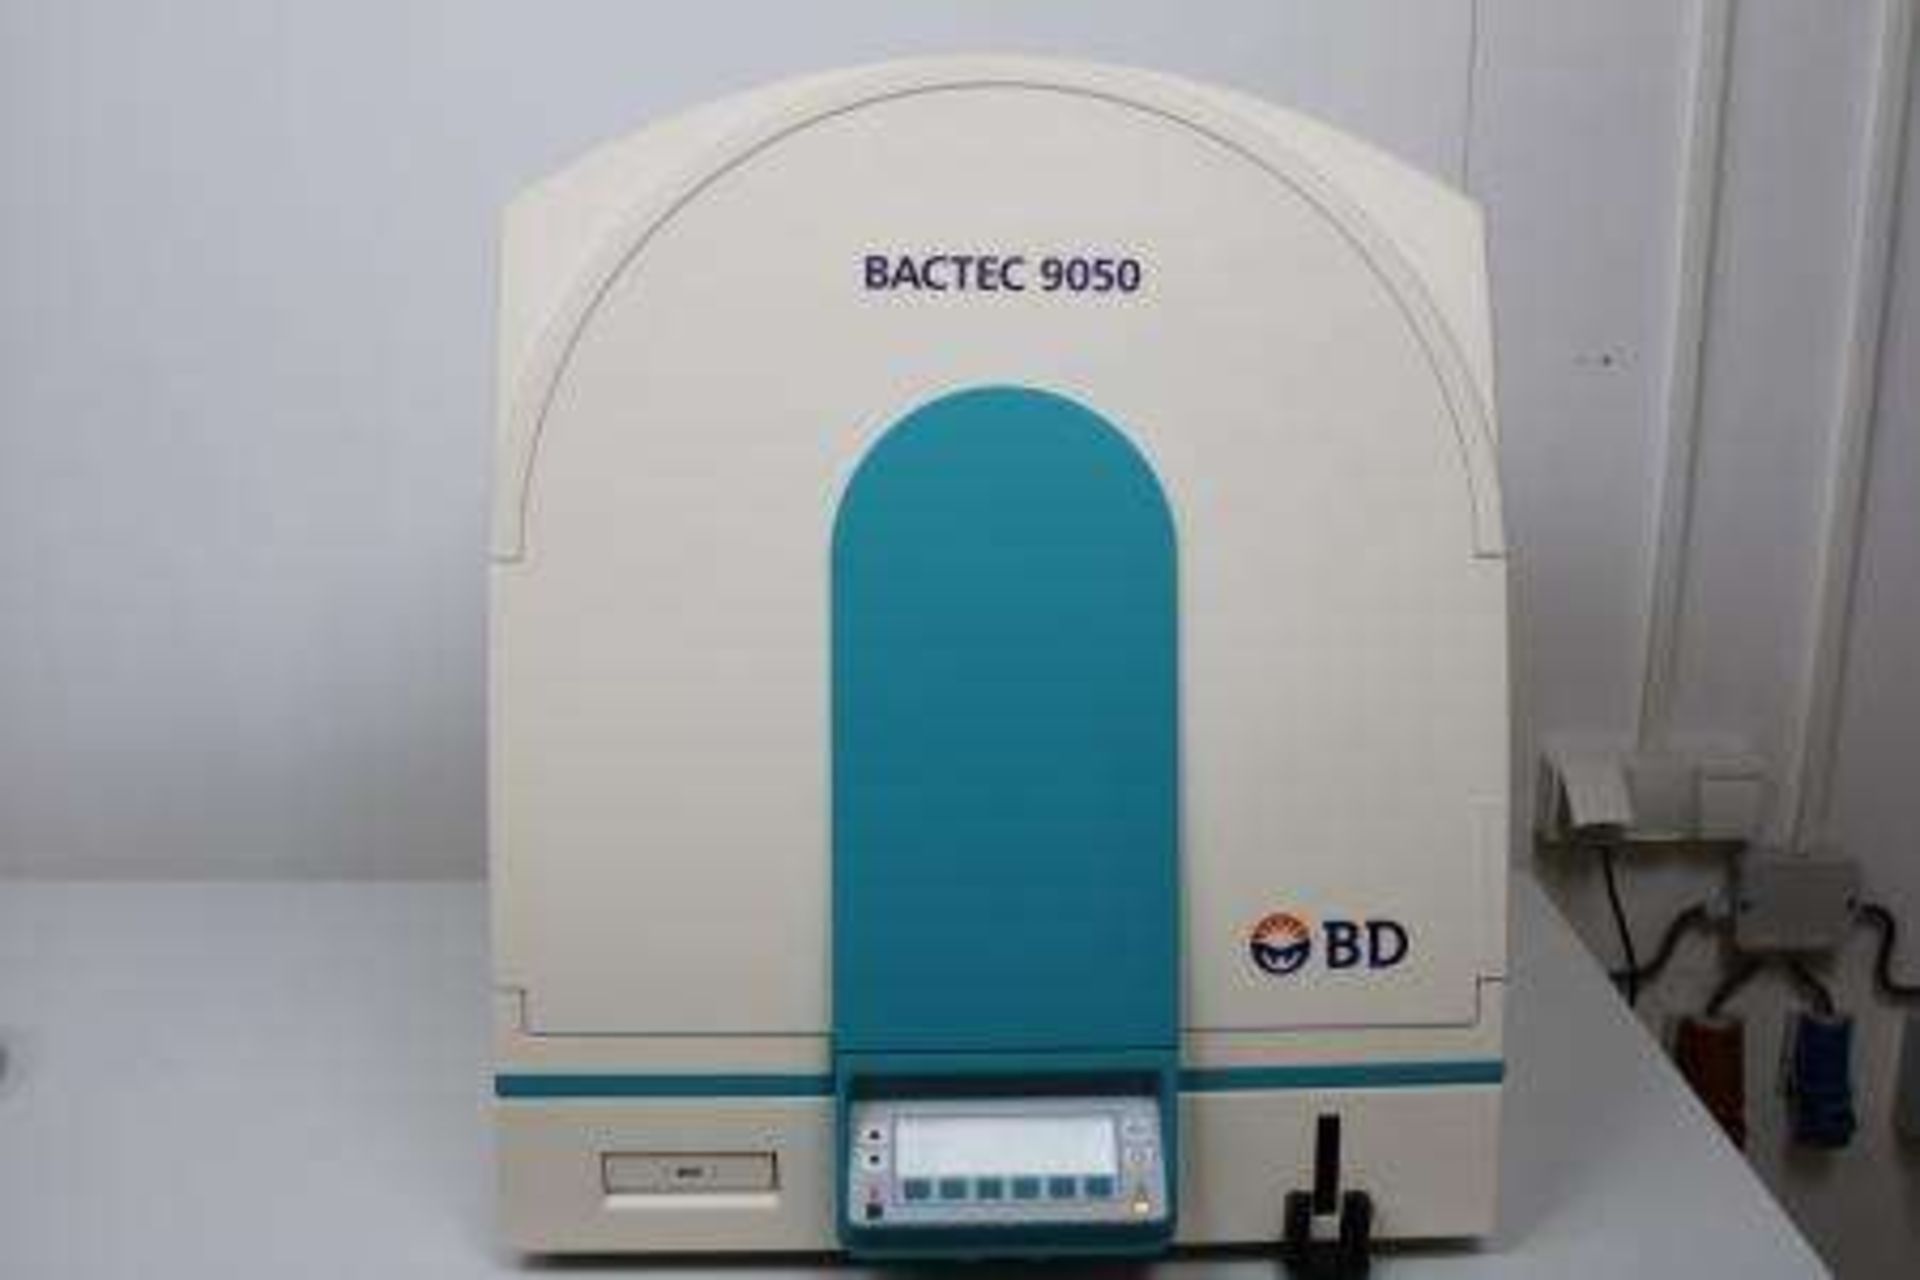 BACTEC 9050